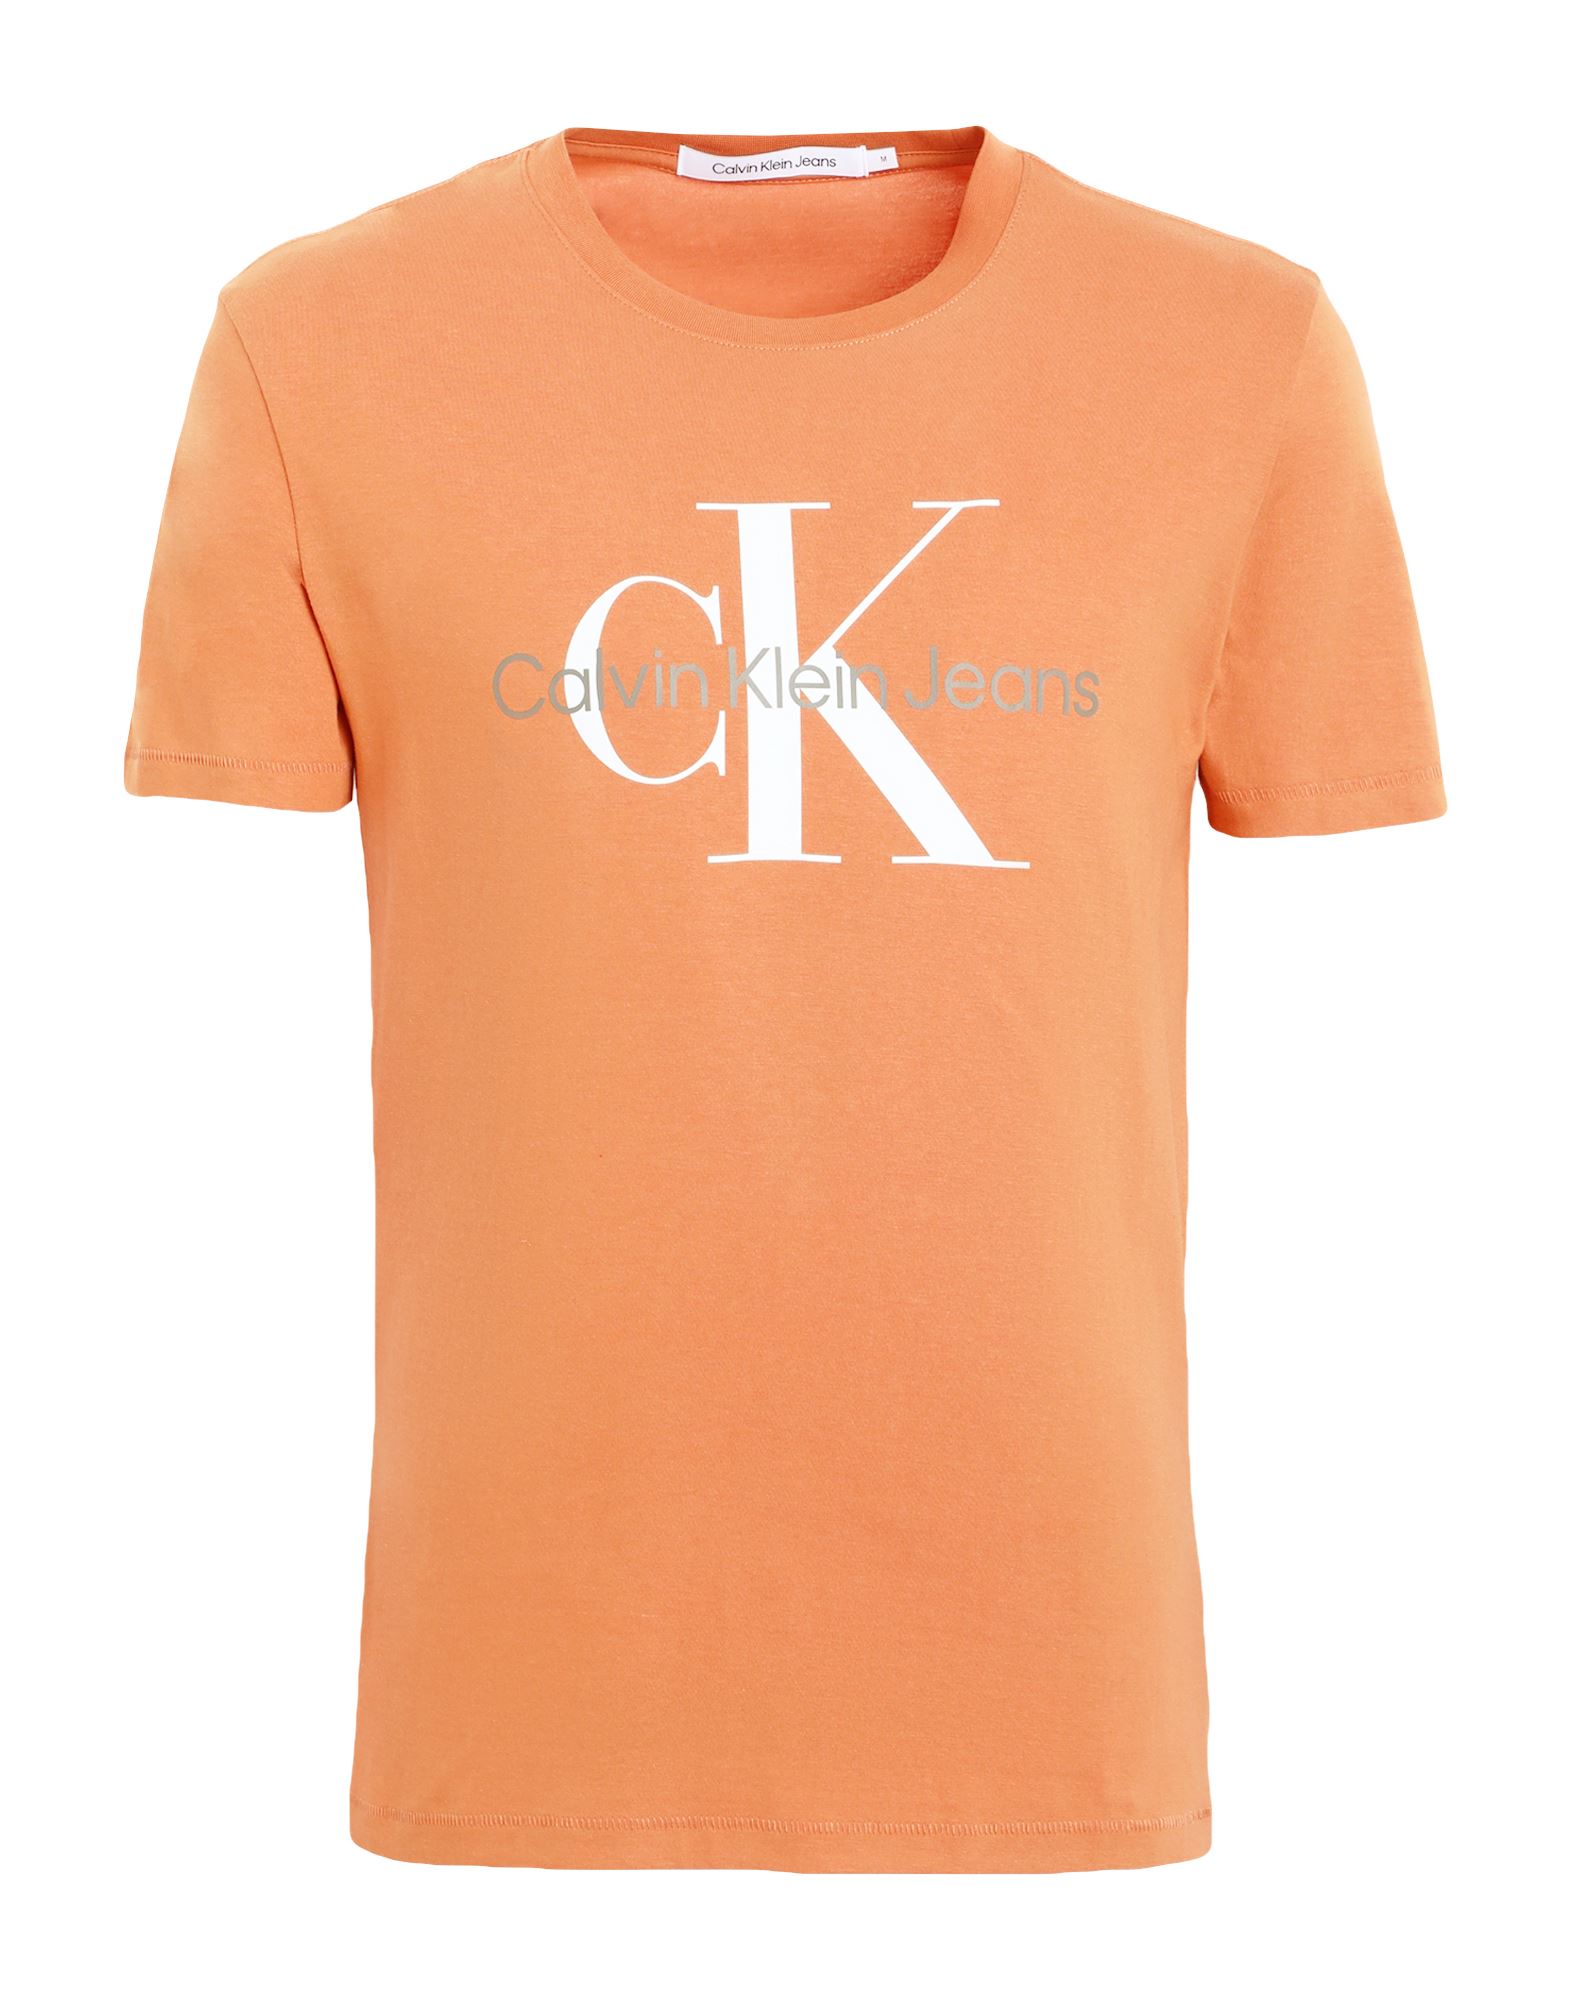 CALVIN KLEIN JEANS T-shirts Herren Orange von CALVIN KLEIN JEANS